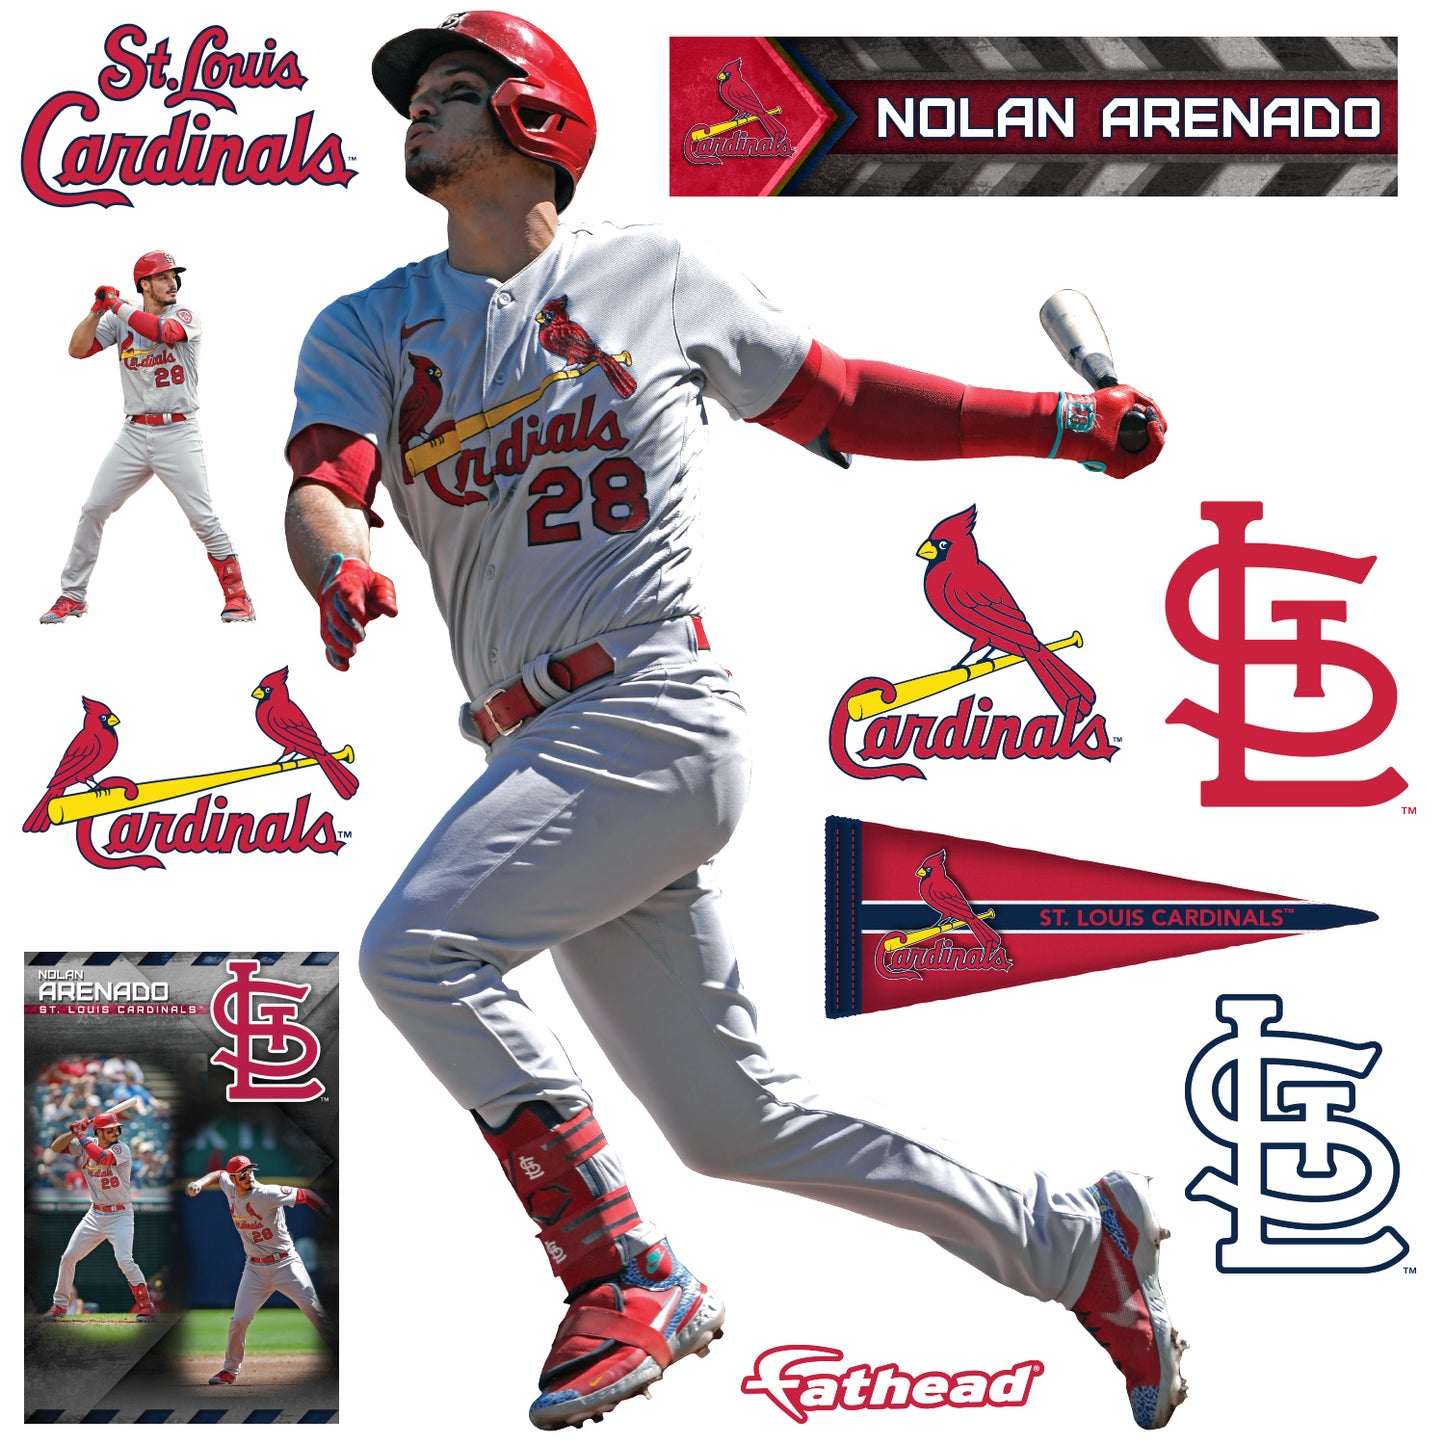 Nolan Arenado  Cardinals players, Cardinals wallpaper, Baseball wallpaper